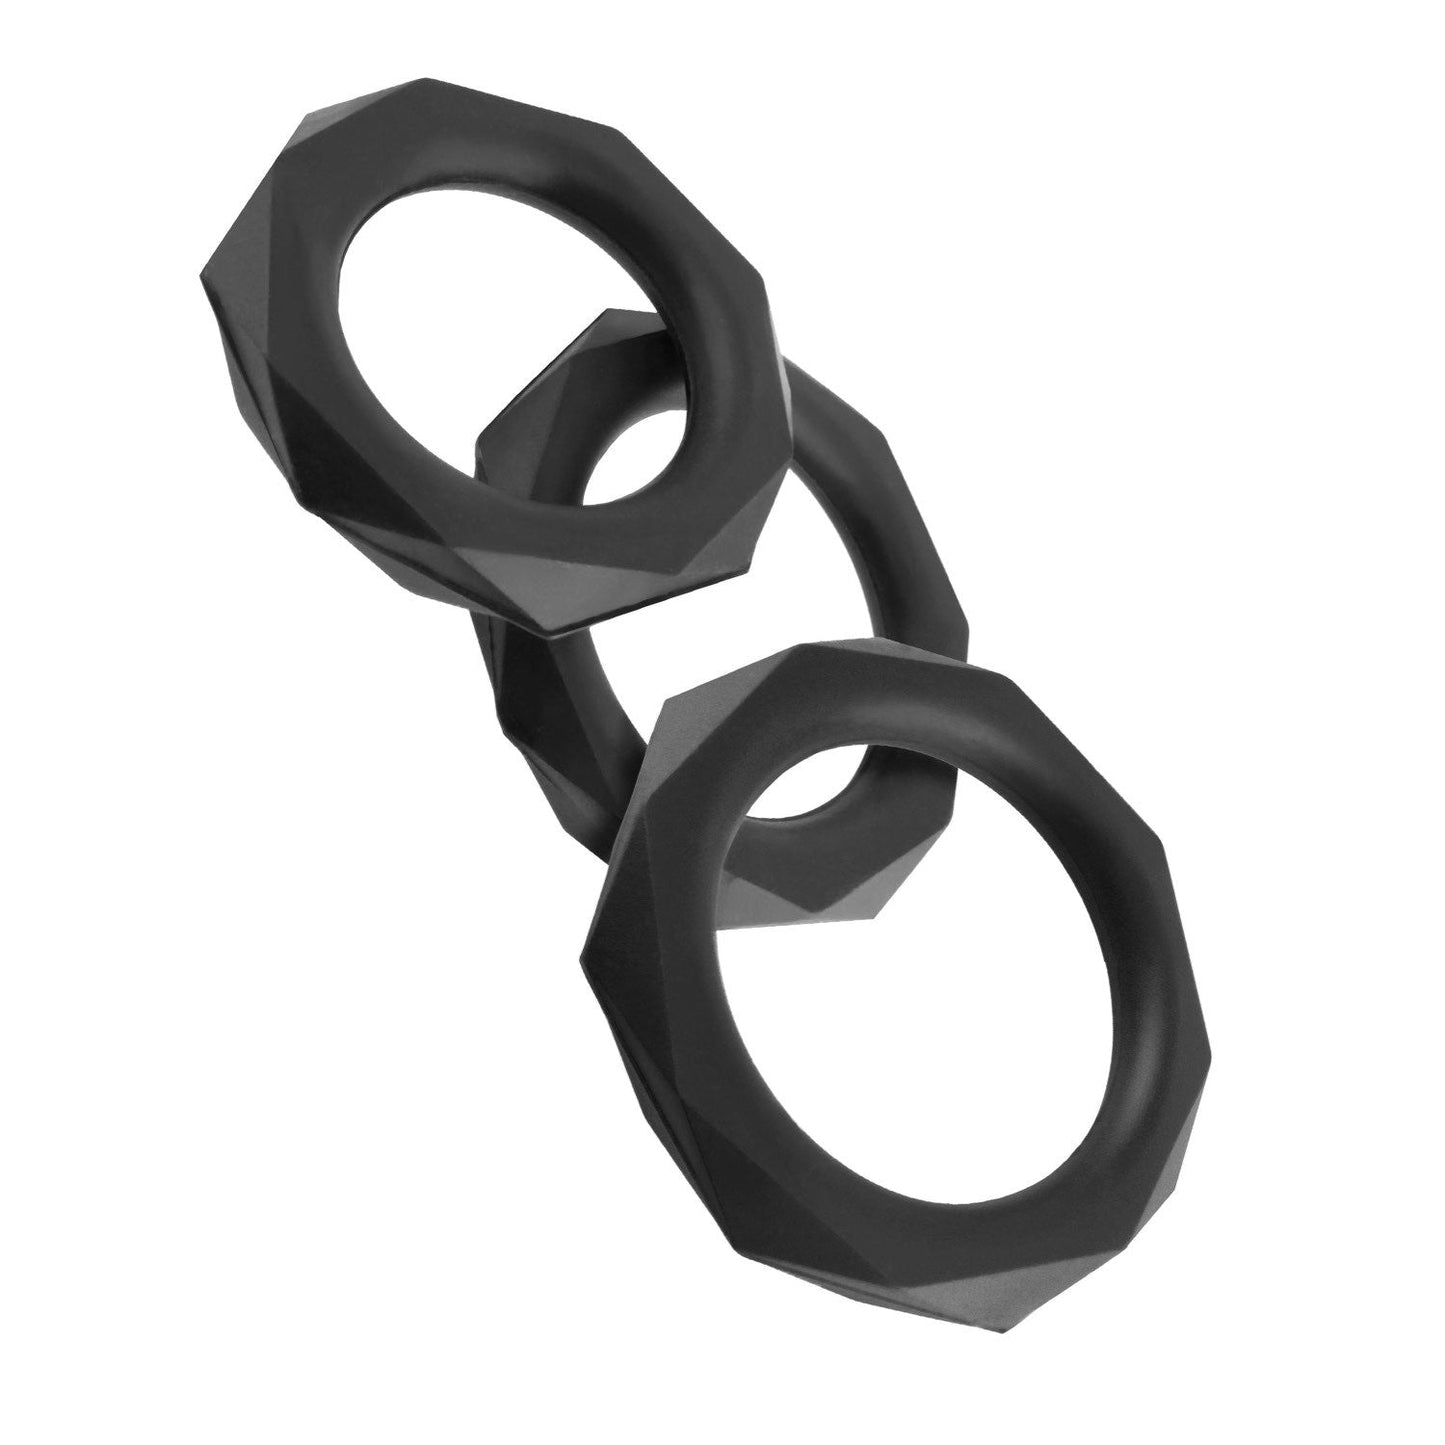 硅胶设计师耐力套装 - 黑色阴茎环 - 3 种尺寸套装